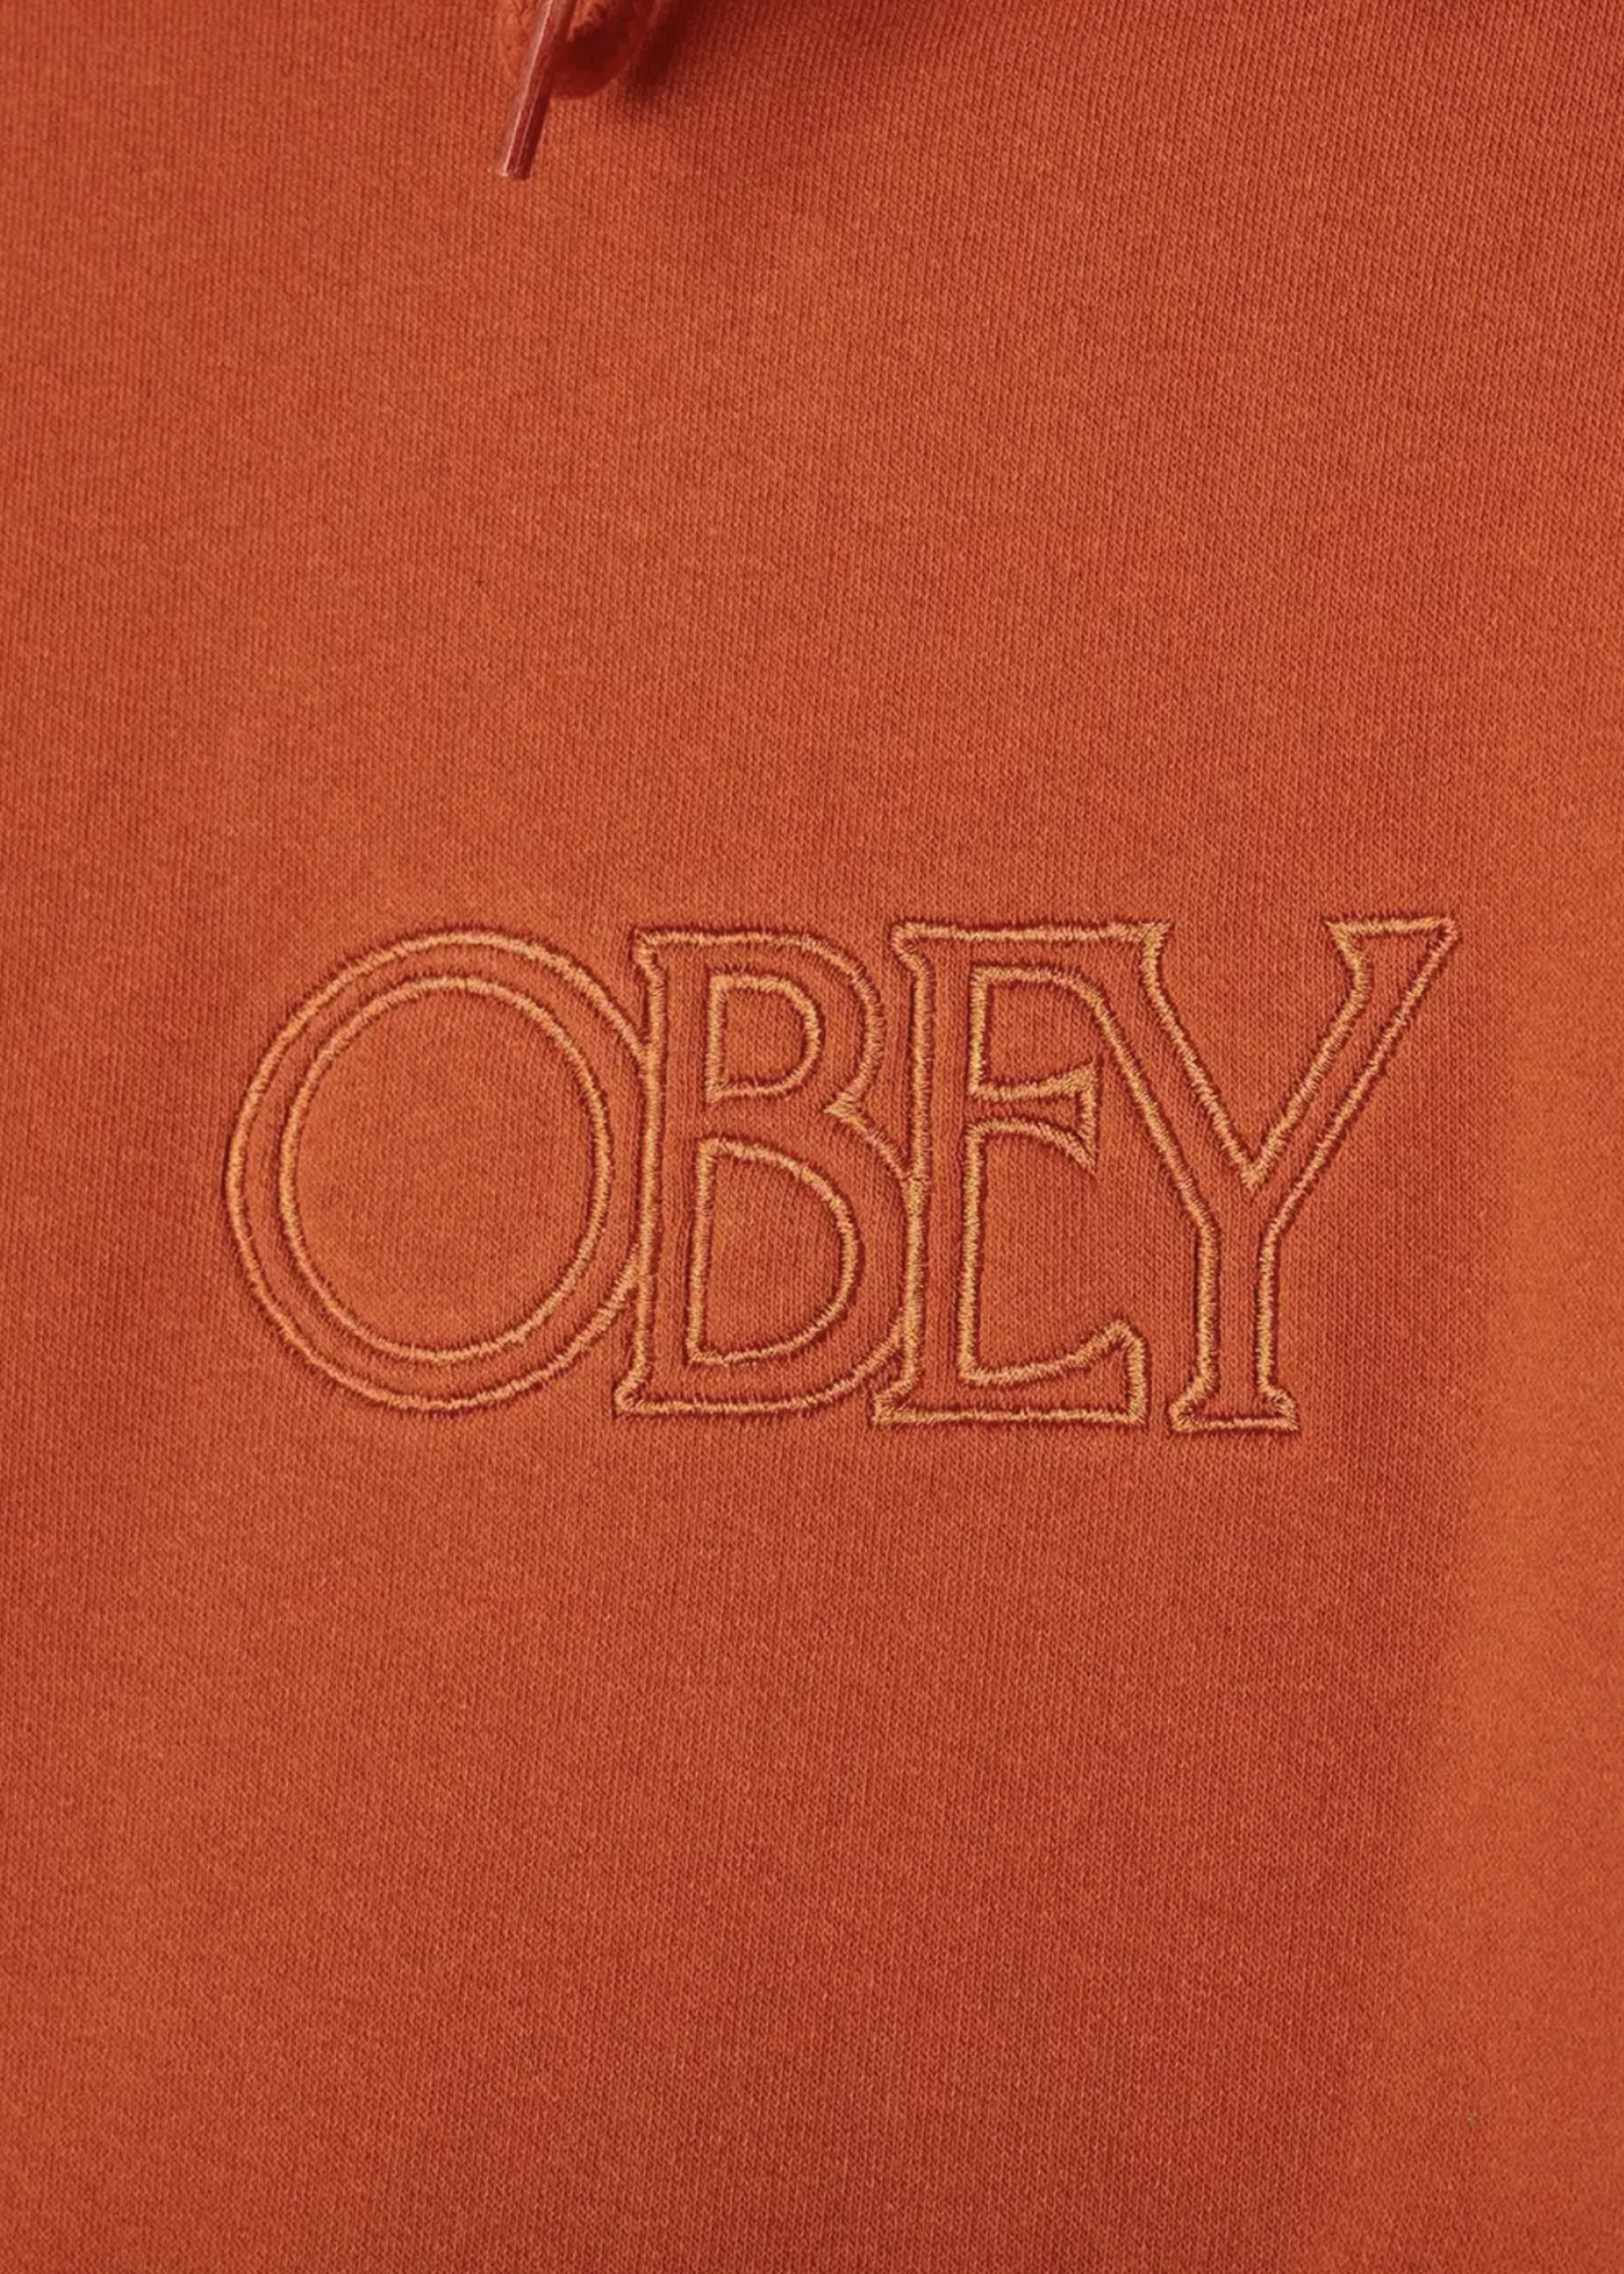 OBEY Obey / Regal Hood